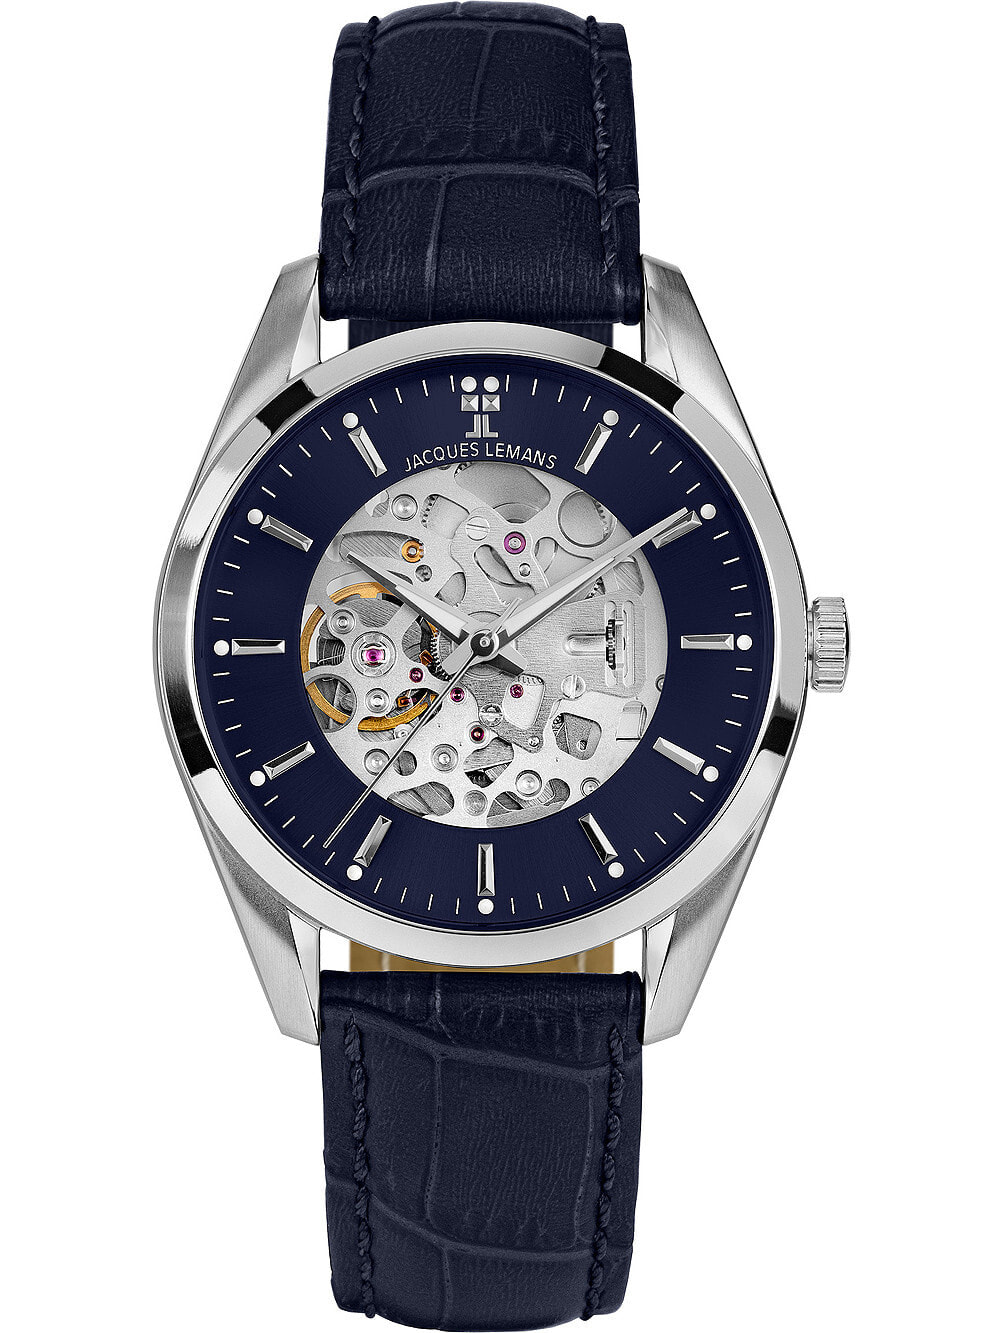 Мужские наручные часы с синим кожаным ремешком  Jacques Lemans 1-2087C Derby automatic 40mm 5ATM